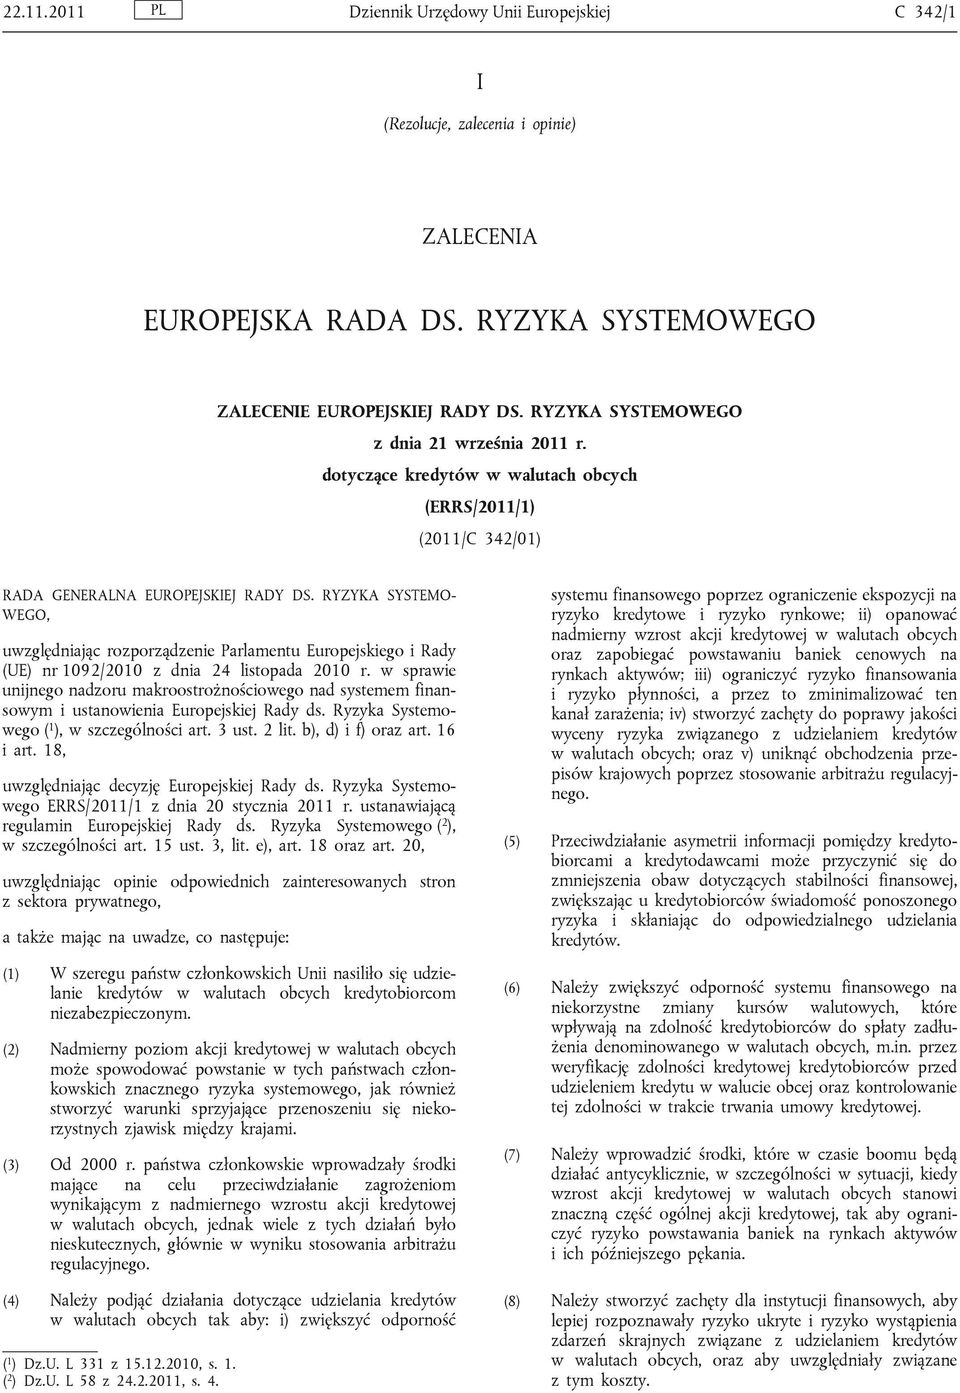 RYZYKA SYSTEMO WEGO, uwzględniając rozporządzenie Parlamentu Europejskiego i Rady (UE) nr 1092/2010 z dnia 24 listopada 2010 r.